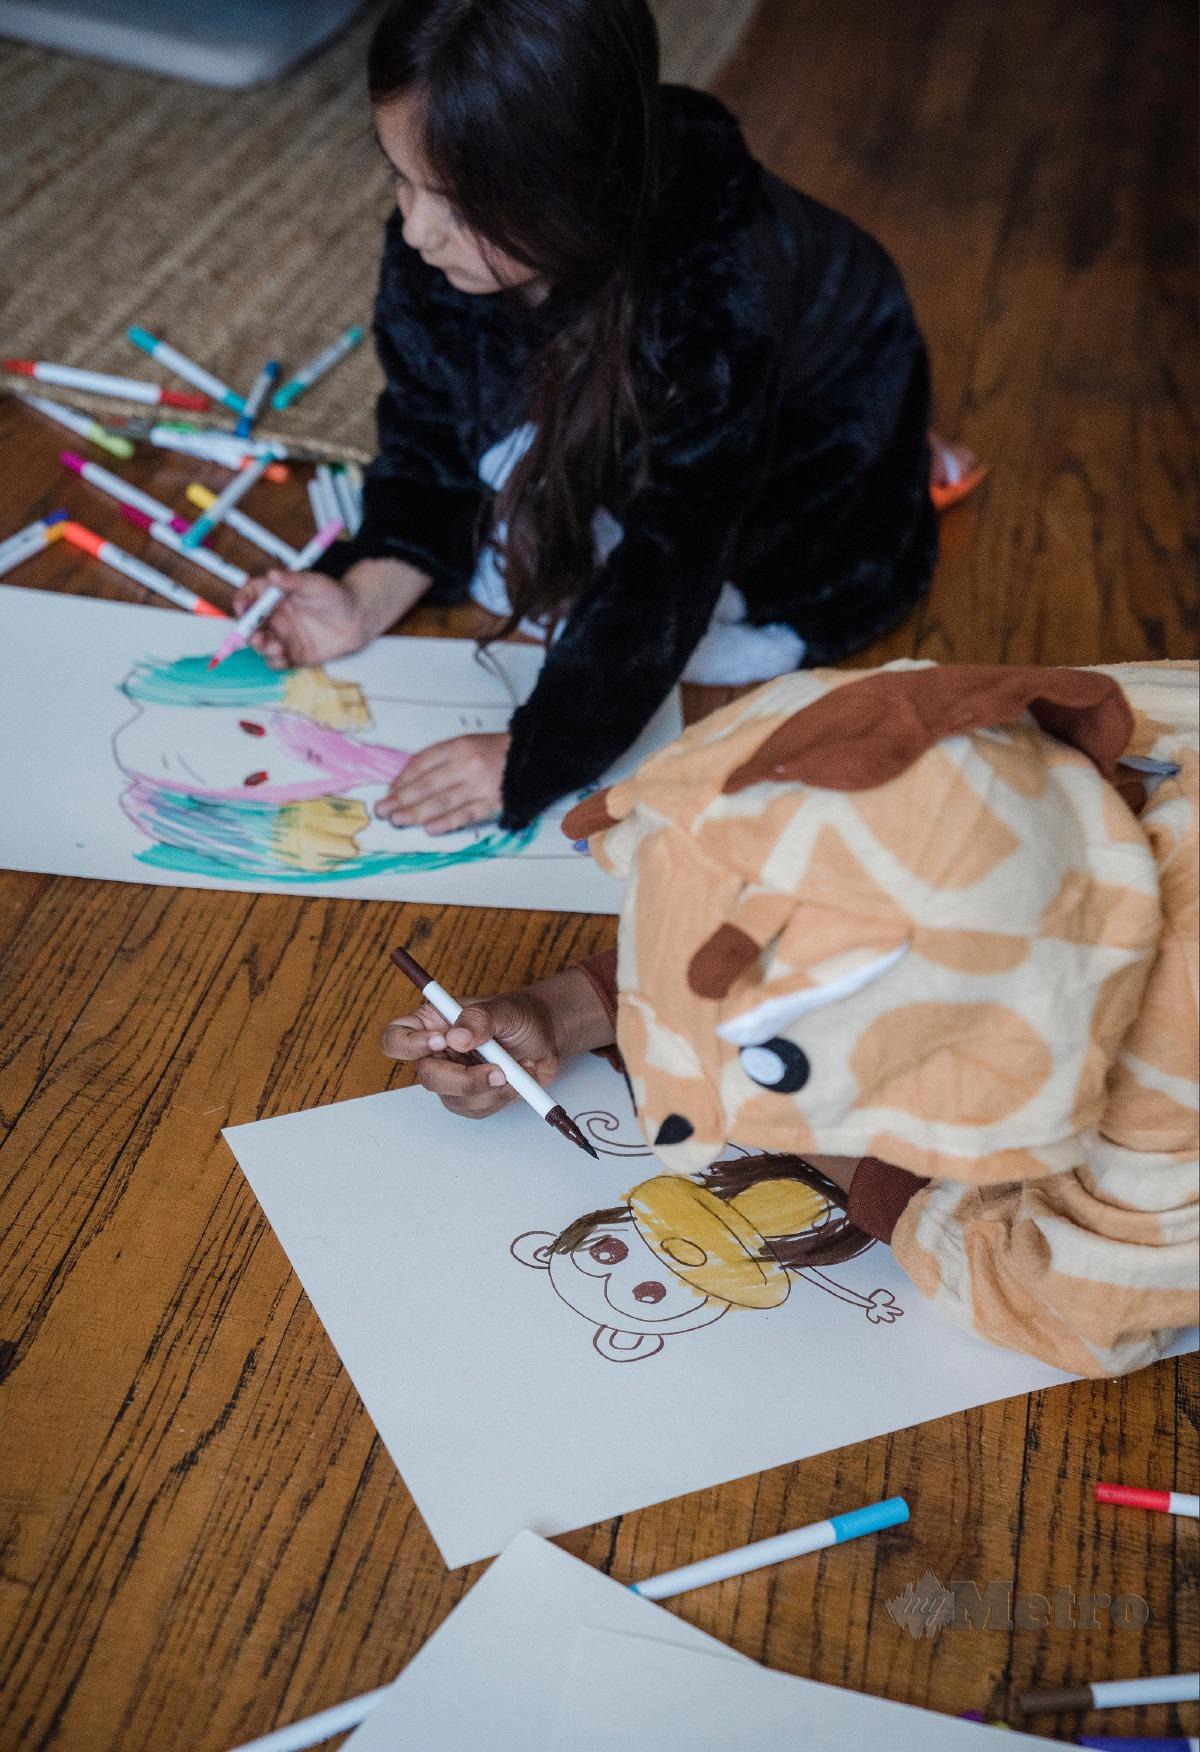 MELUKIS antara hobi yang baik untuk kanak-kanak mengekspresikan bakat dan kreativiti.